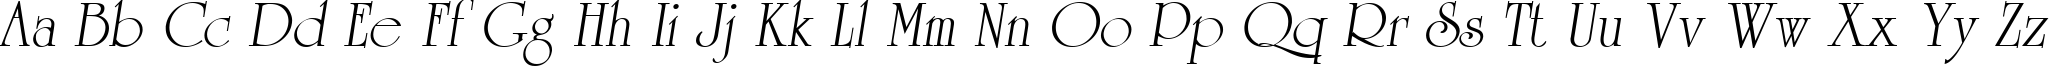 Пример написания английского алфавита шрифтом University Oblique